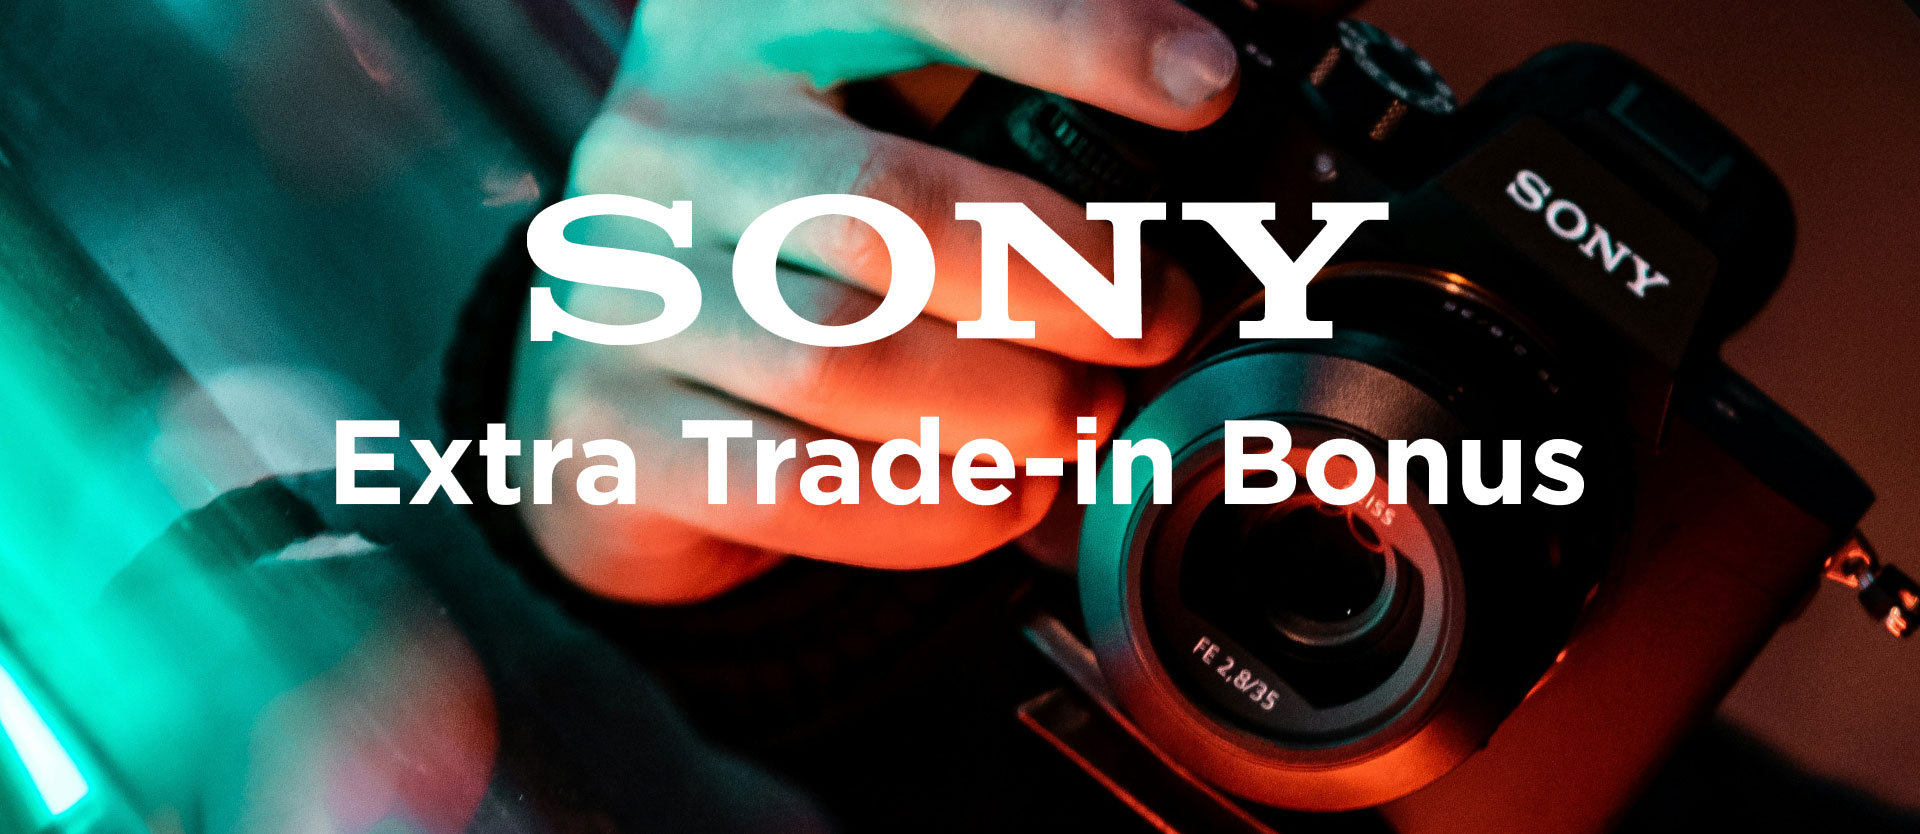 Sony-camera_Extra-trade-in-bonus_header